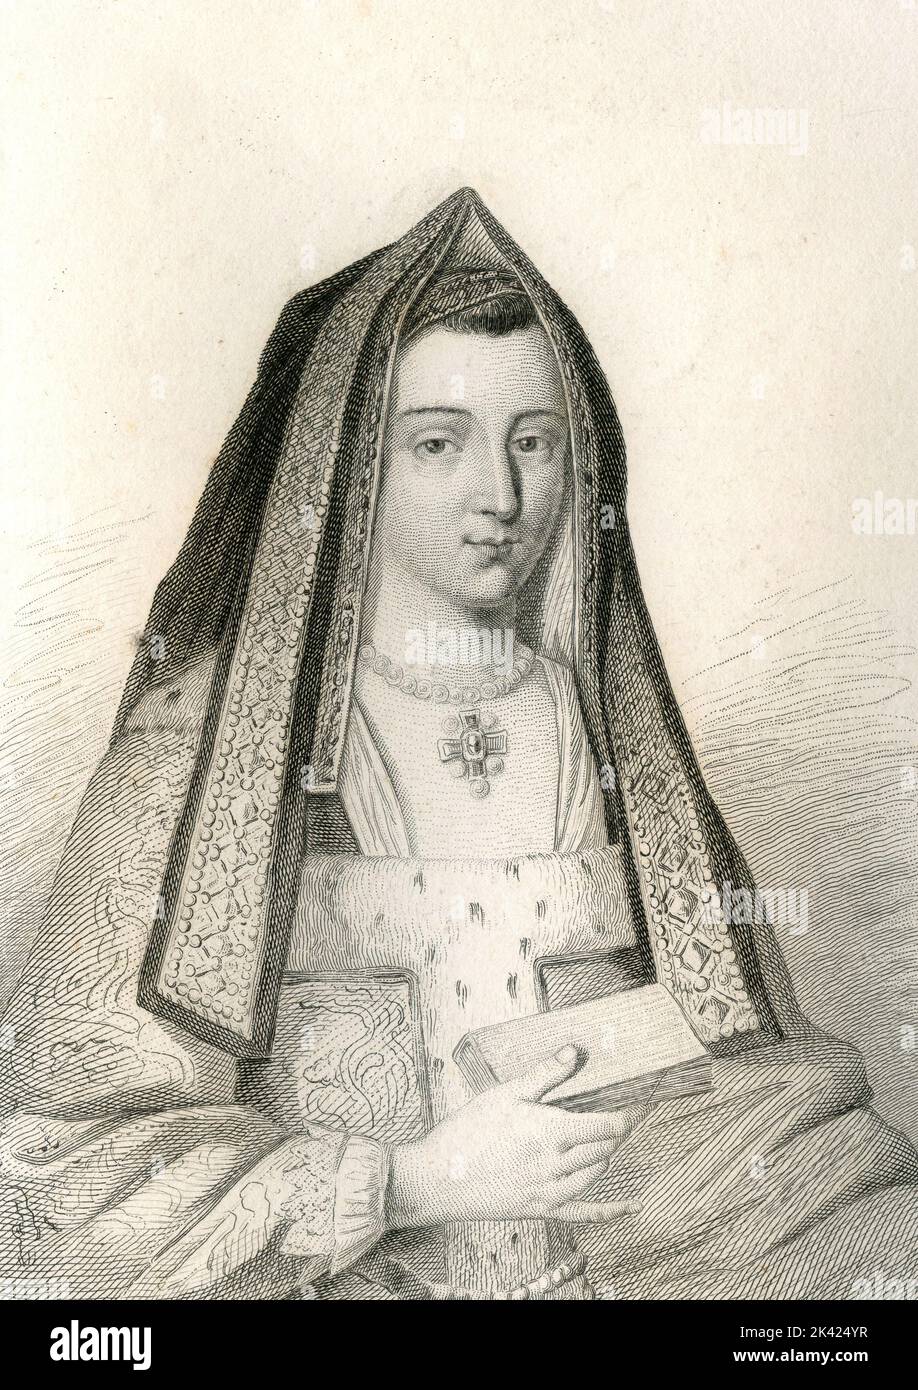 Ritratto di Marie de Montauban, figlia dell'Ammiraglio de Moutauban, 1800 ca. Foto Stock